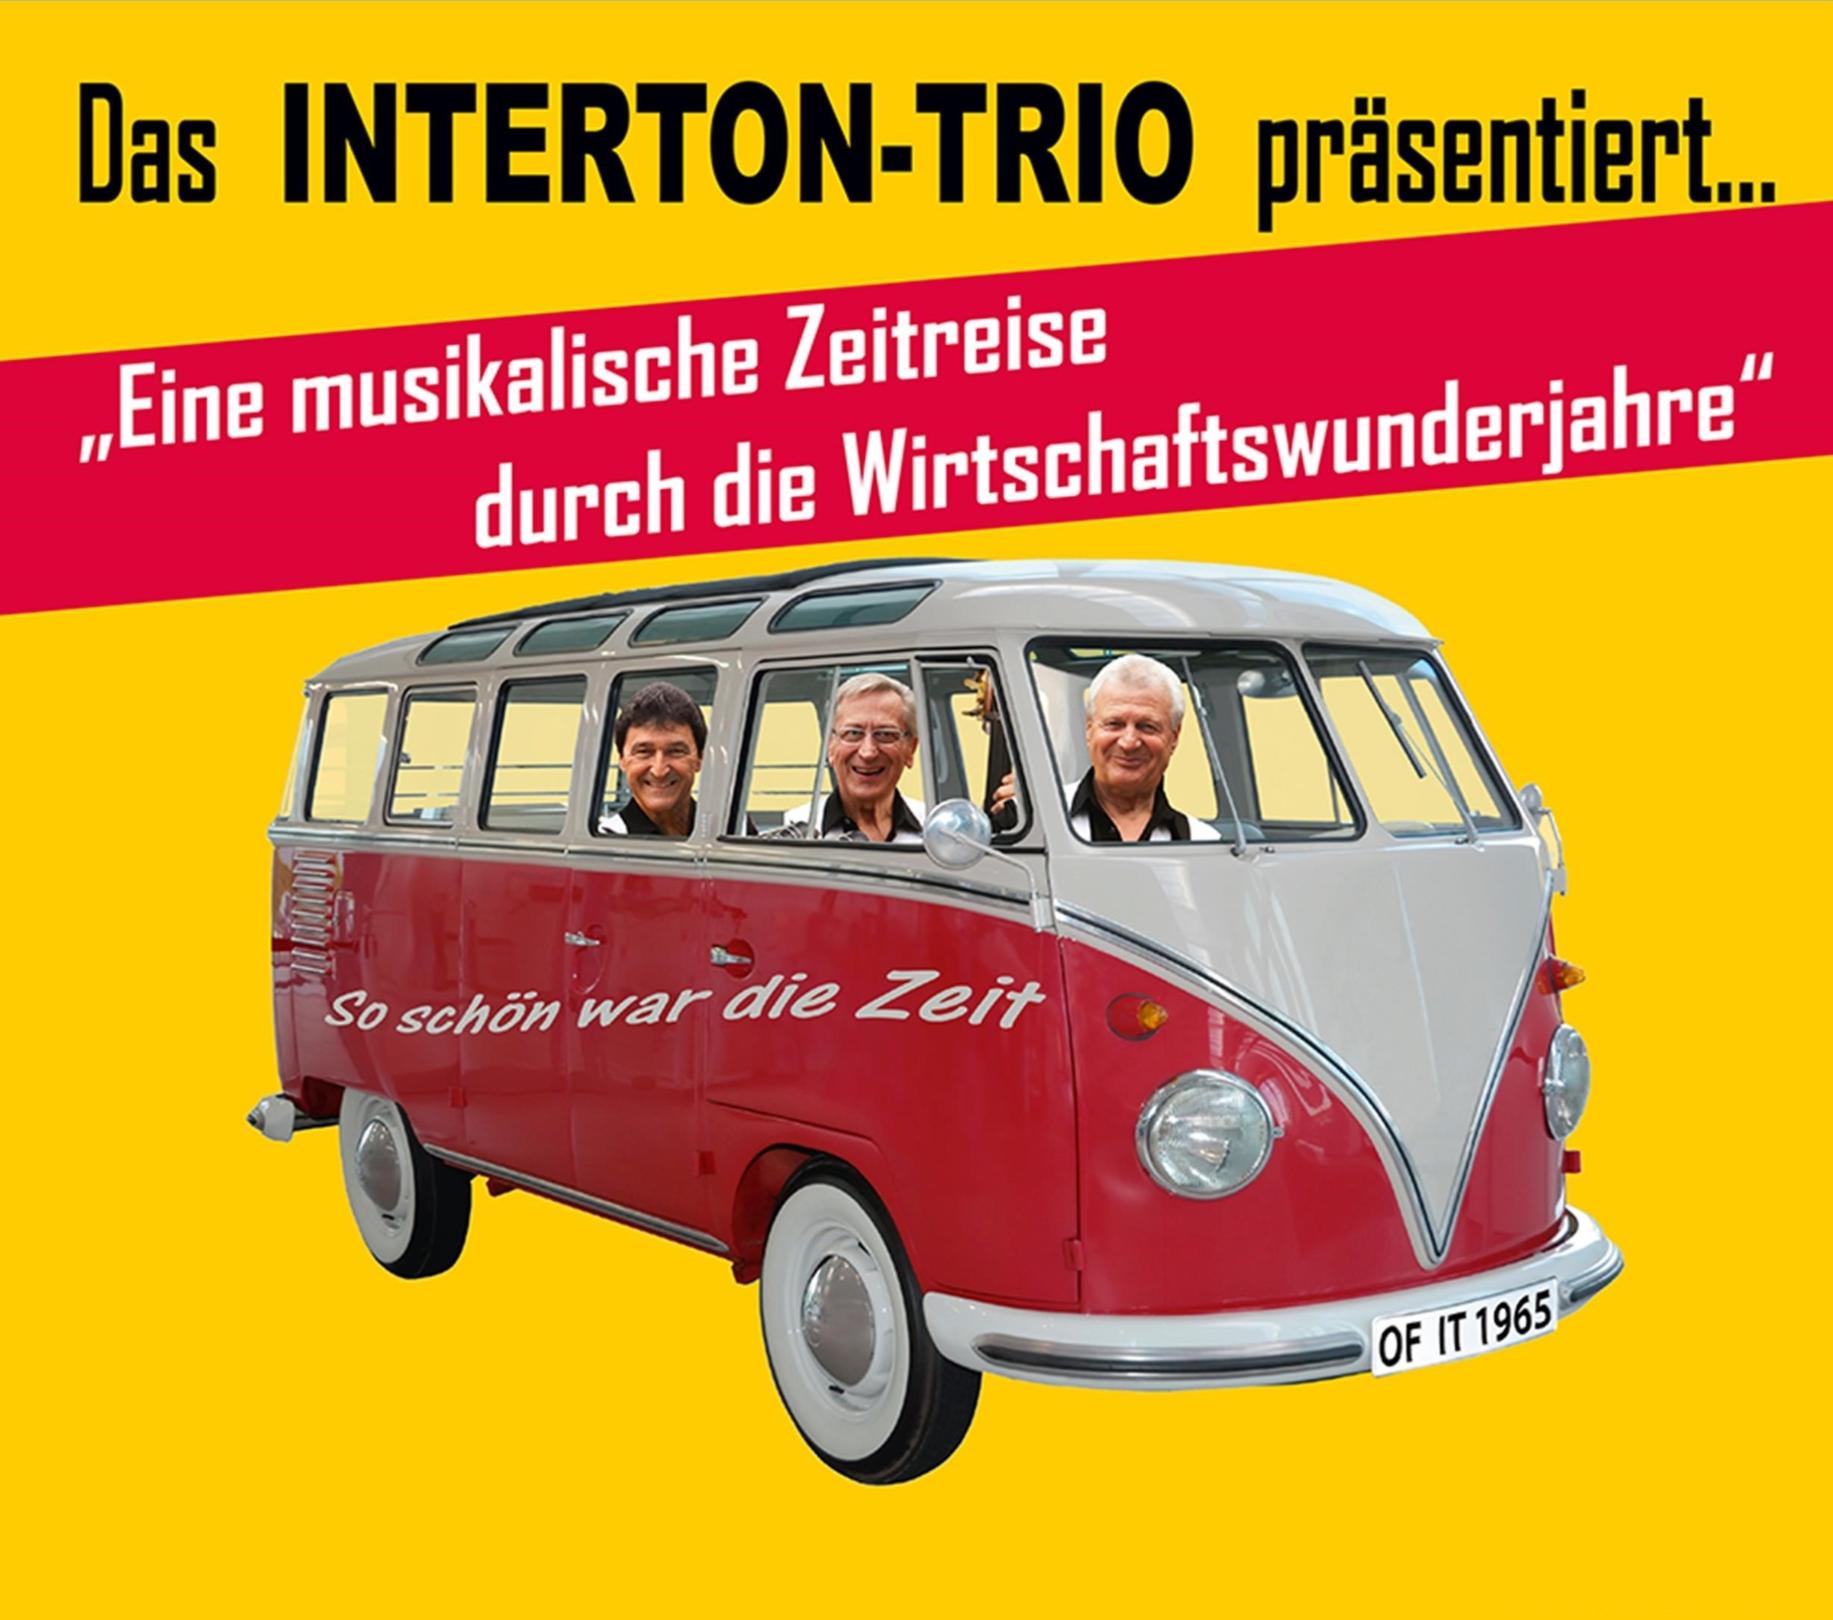 7 Benefitzkonzert Interton Trio zugunsten der Speisekammer (c) IntertonTrio